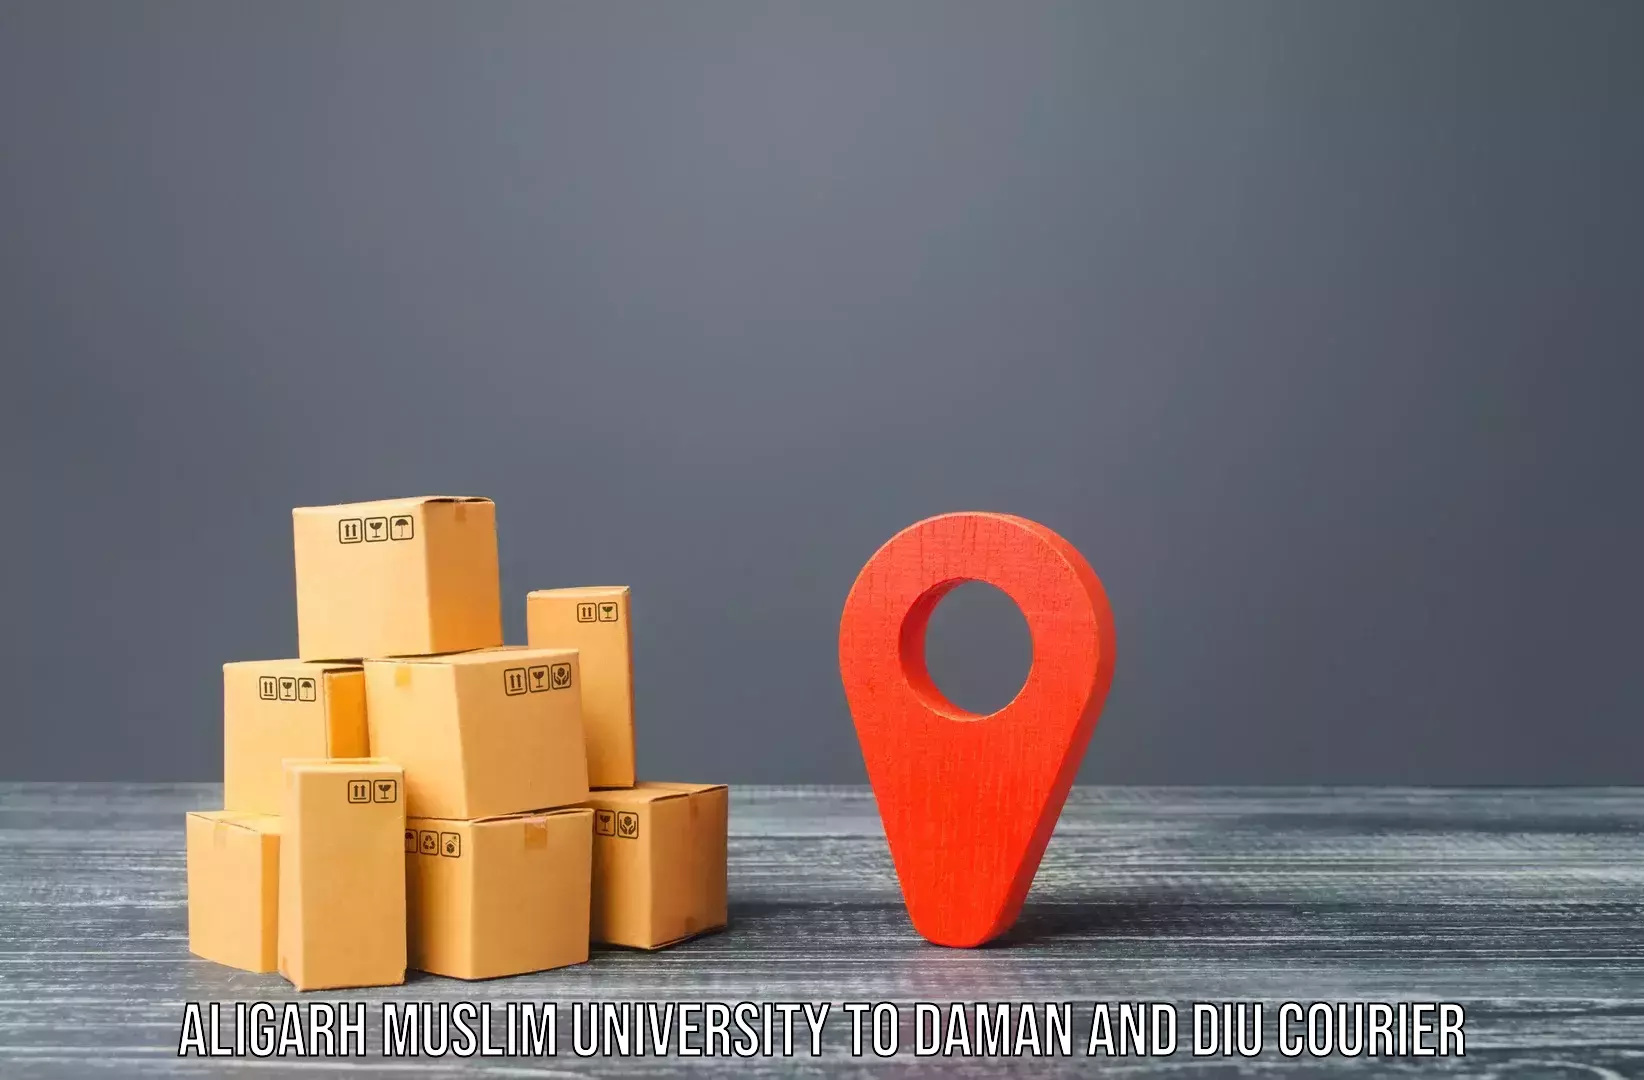 Expert goods movers Aligarh Muslim University to Daman